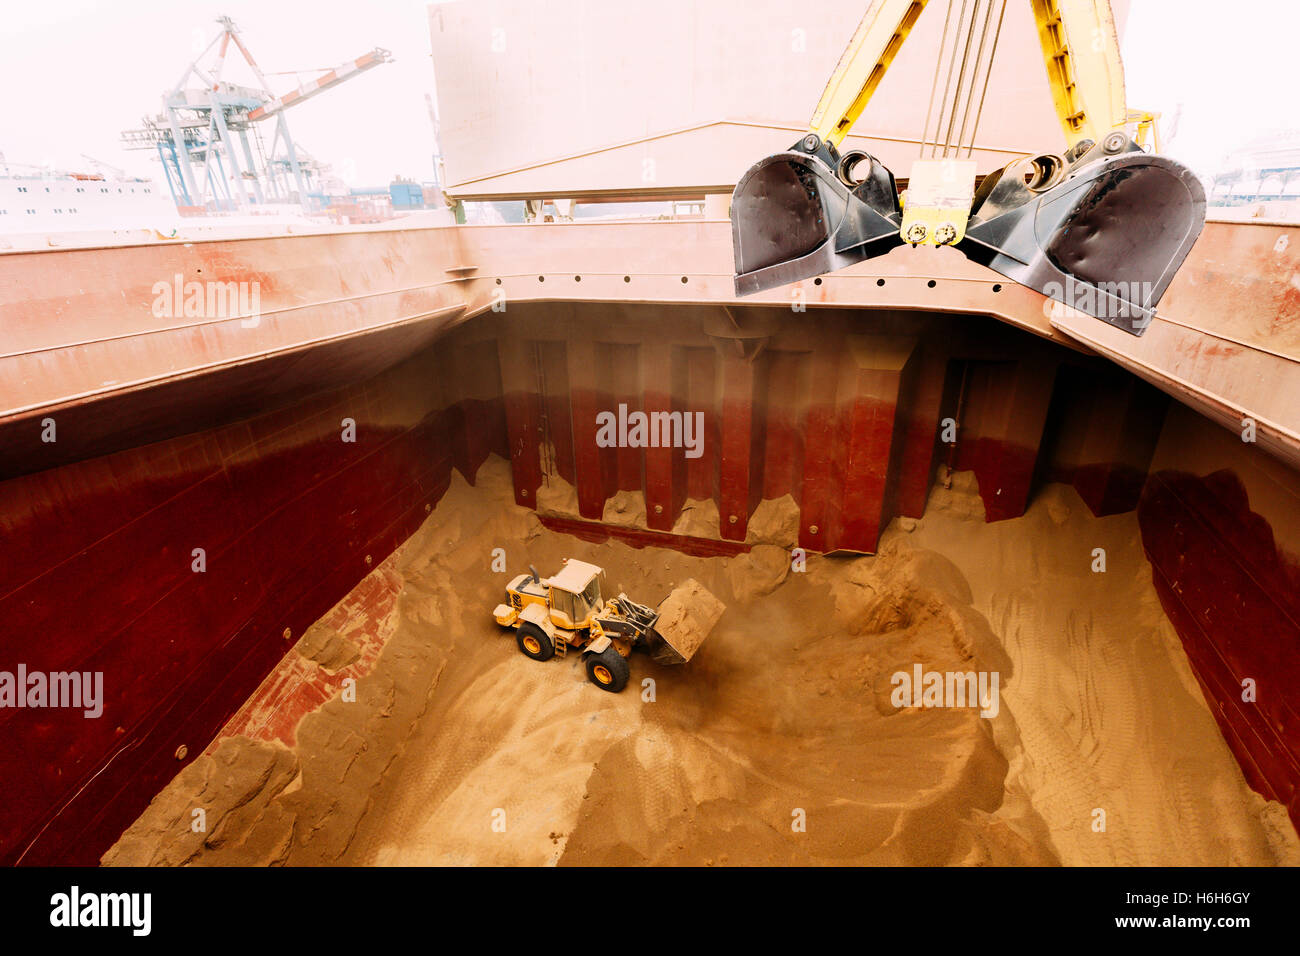 Ein Bagger, Vermittlung von Gluten in der Grube ein Korn-Frachter Schiff für einen leichteren Zugang für die Maschinen, die Emptyi sind Stockfoto